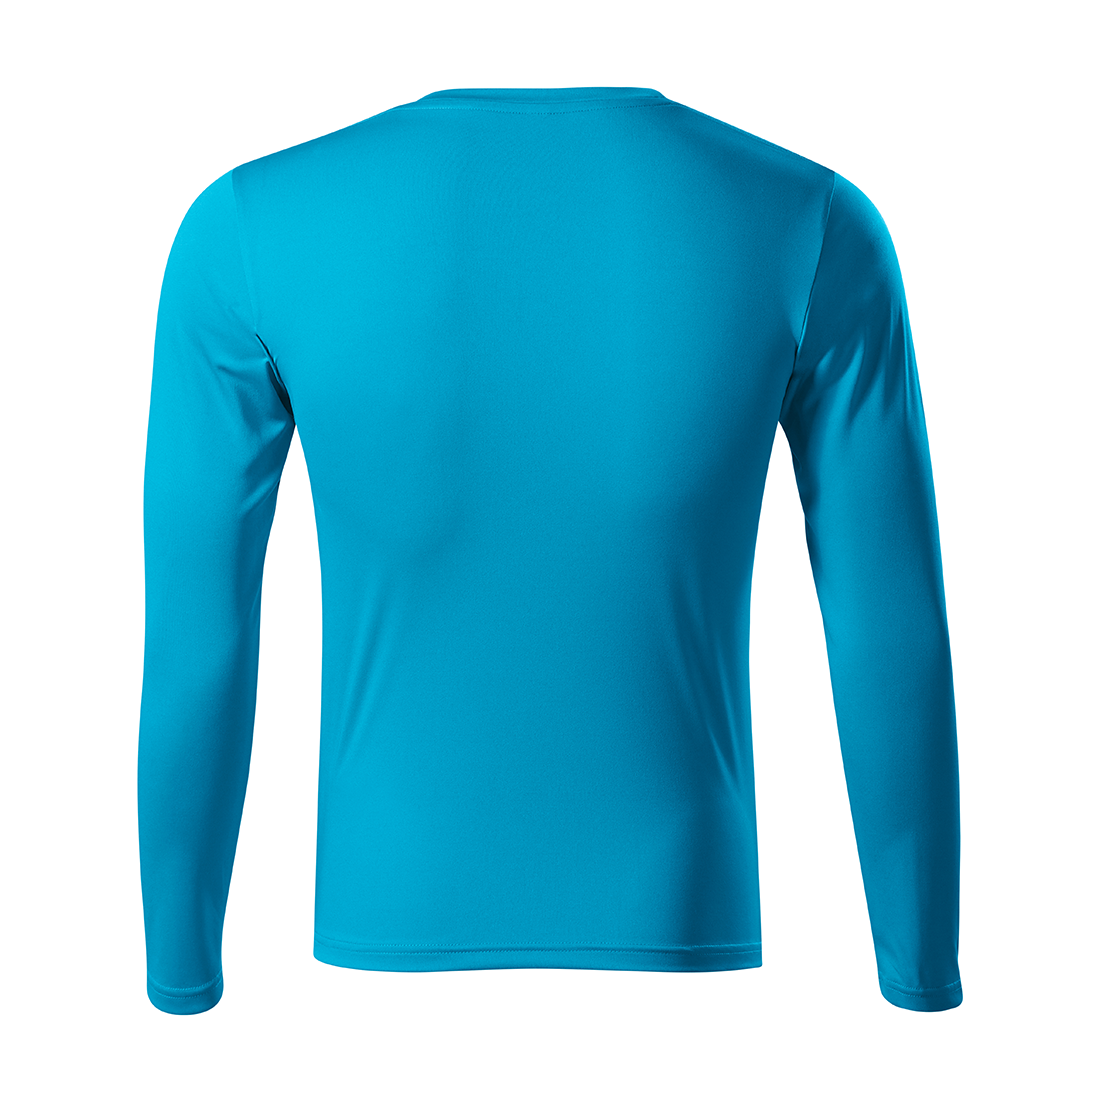 PRIDE Unisex T-shirt - Safetywear